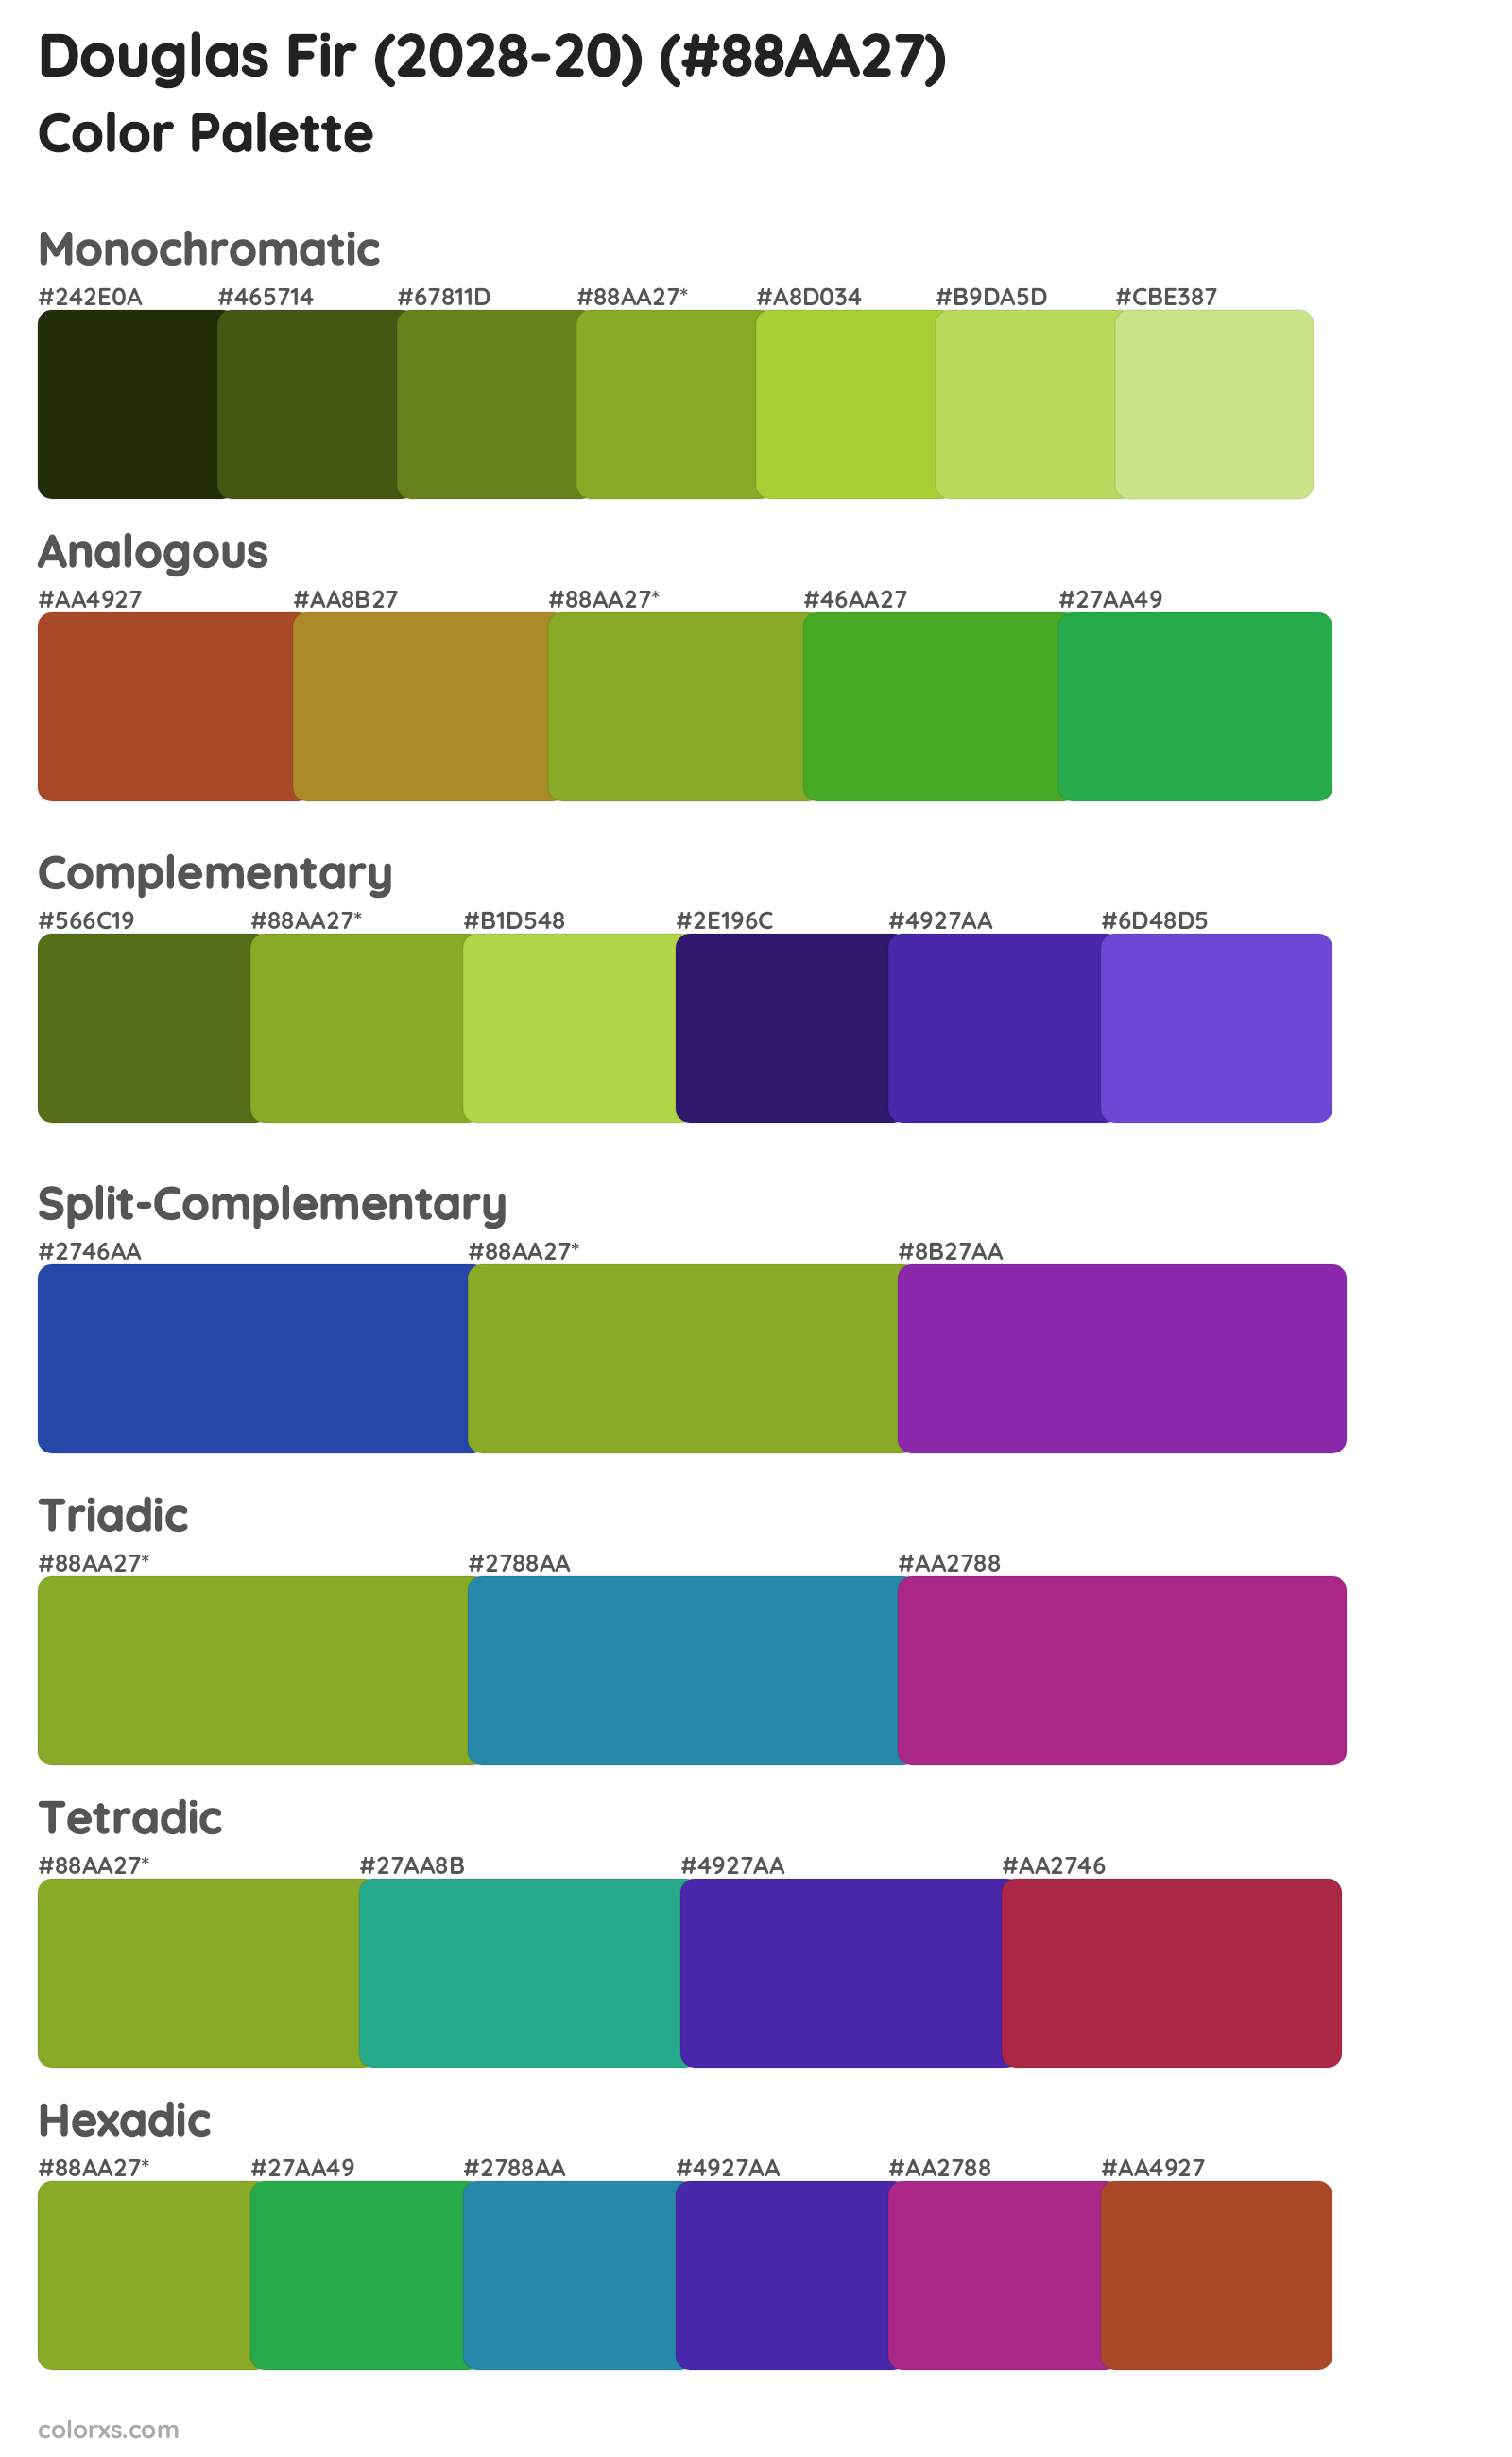 Douglas Fir (2028-20) Color Scheme Palettes